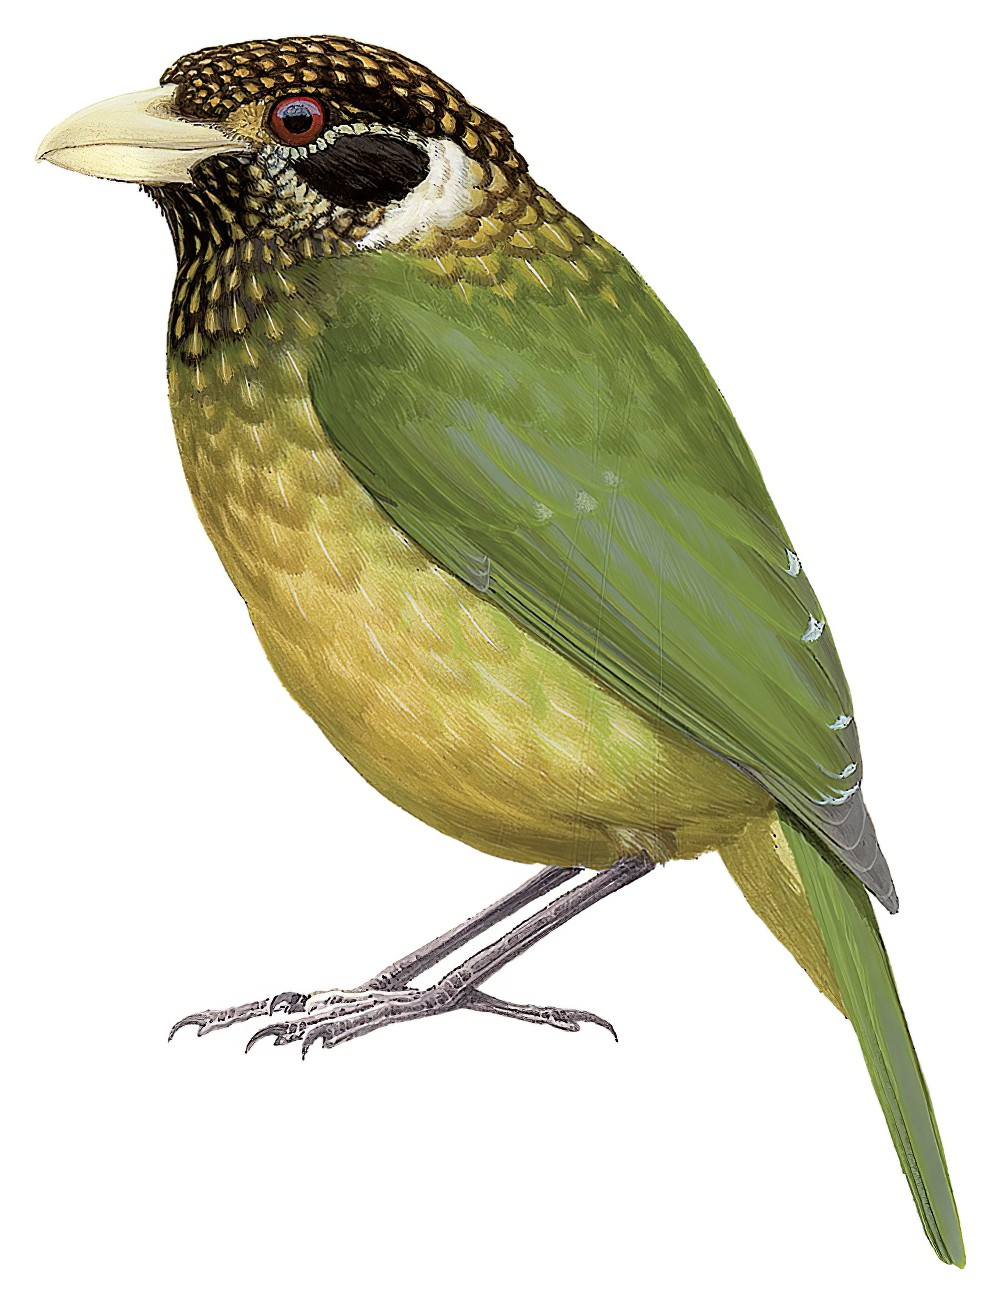 北方园丁鸟 / Northern Catbird / Ailuroedus jobiensis